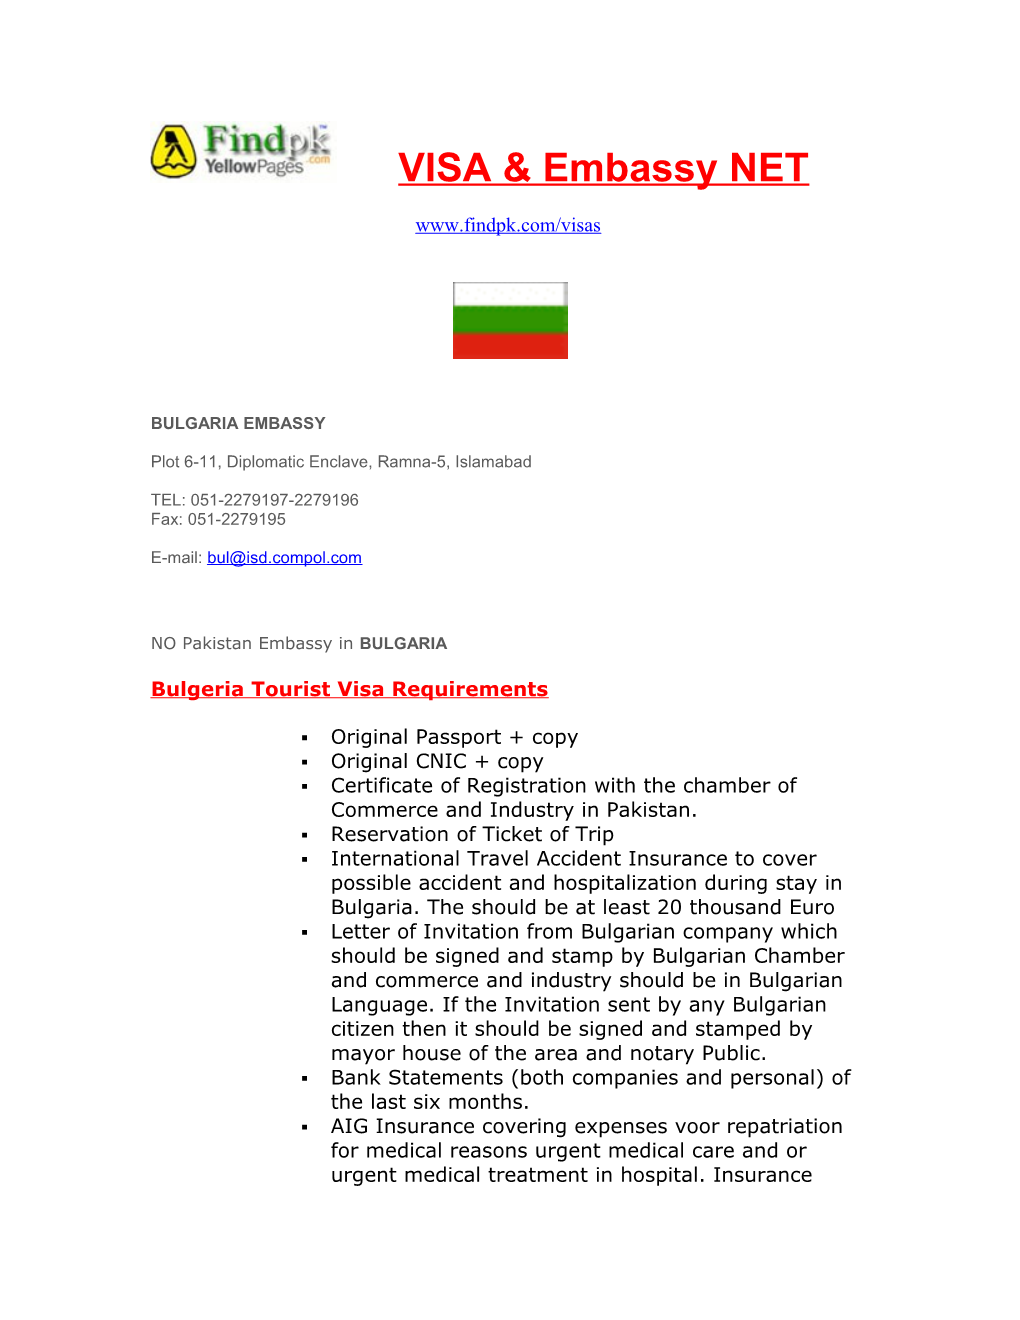 Bulgeria Tourist Visa Requirements